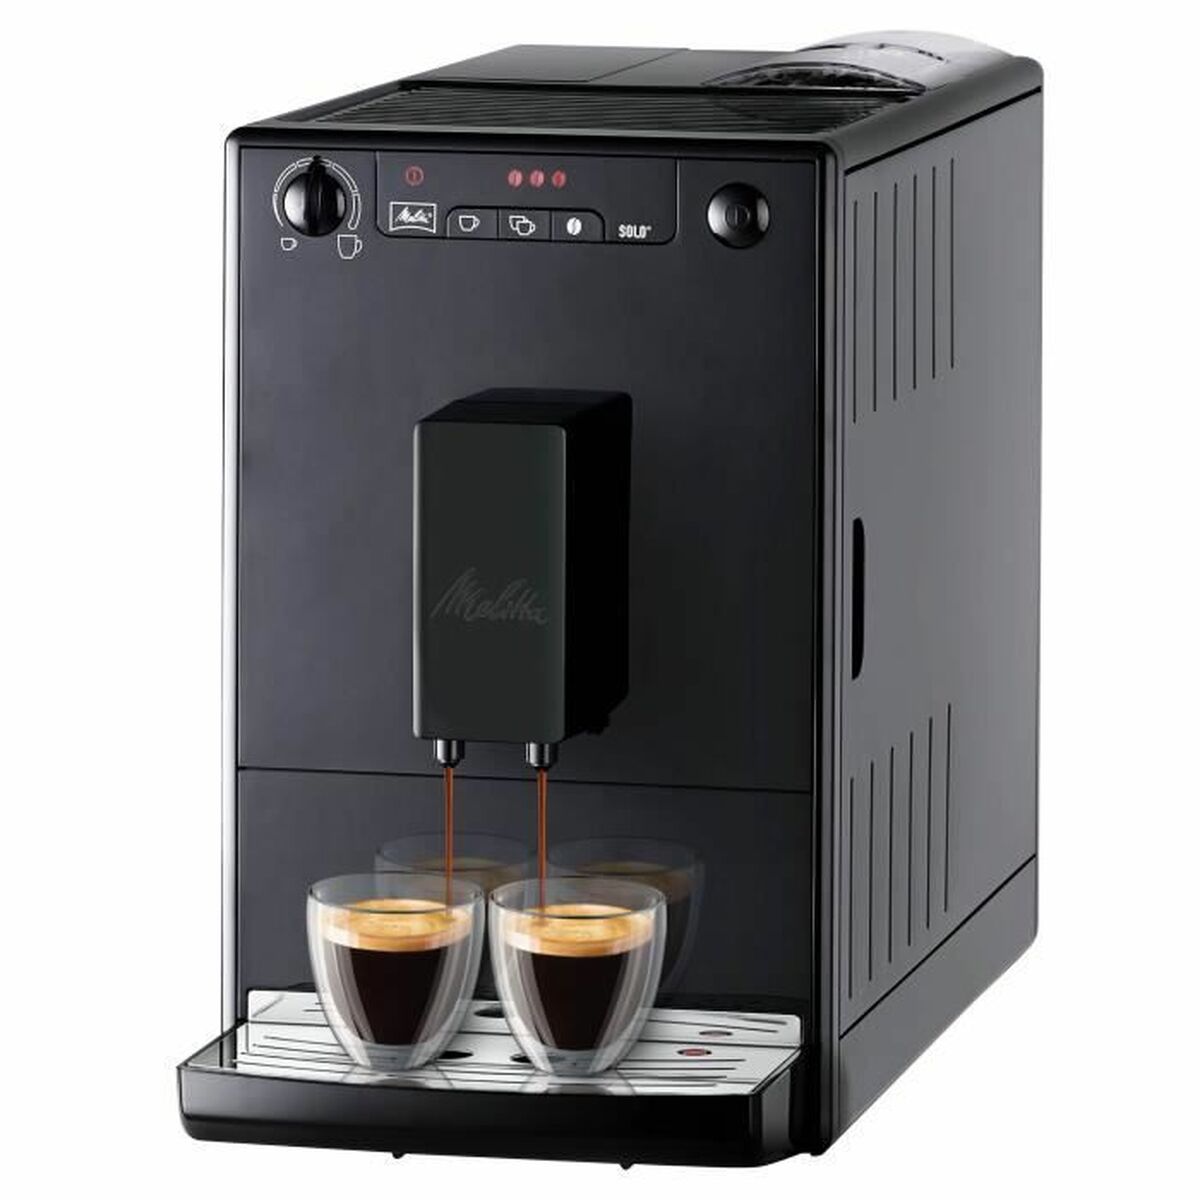 Superautomatische Kaffeemaschine Melitta 6708702 Schwarz 1400 W - CA International 